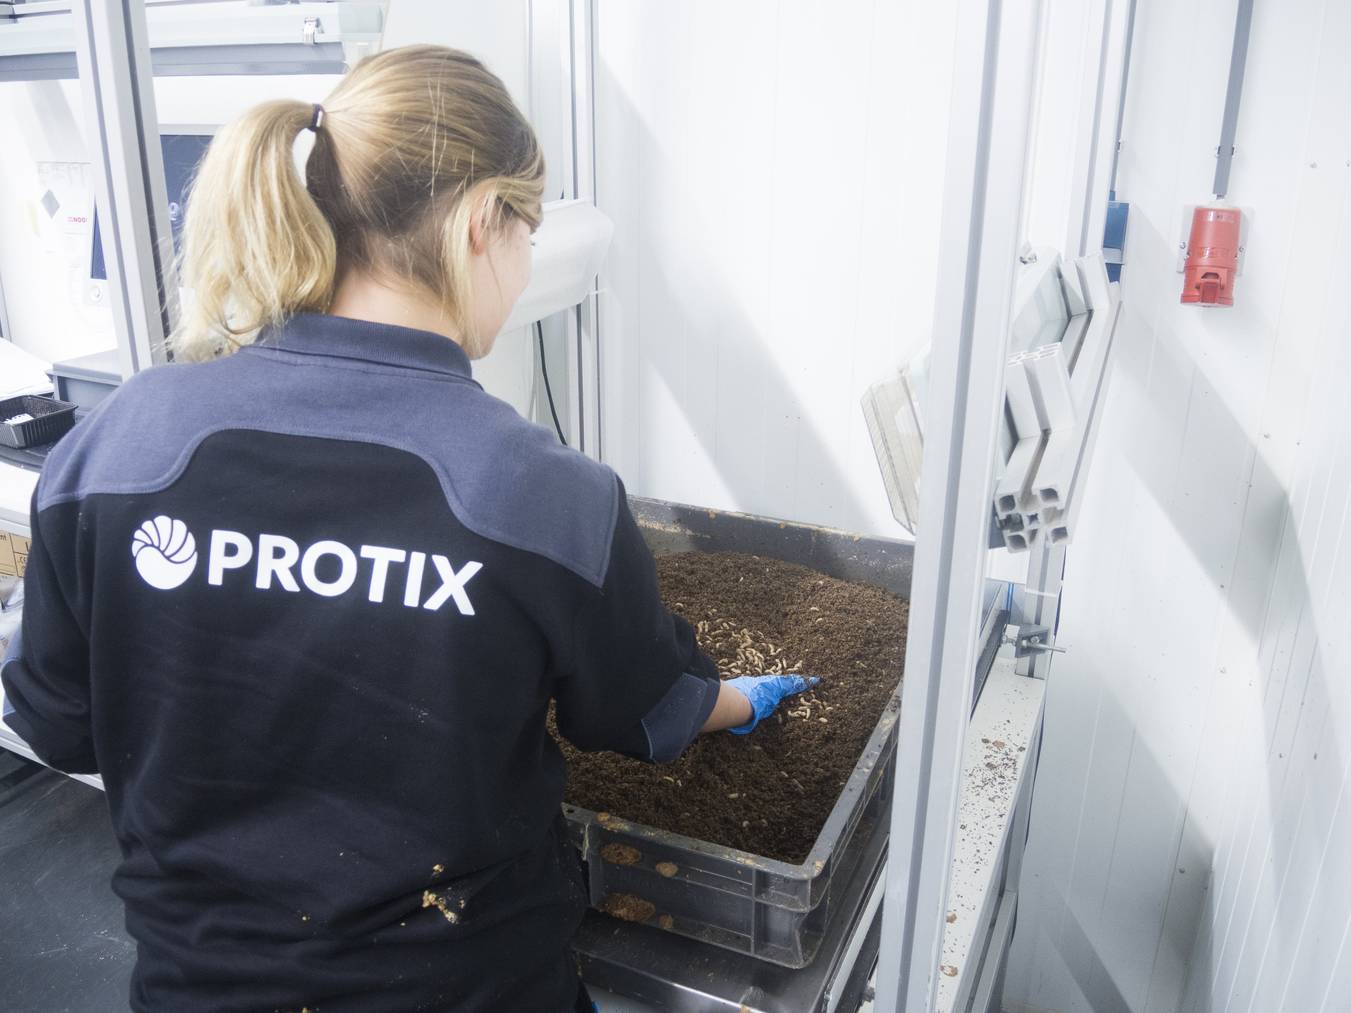 Die Firma Protix hat jahrelange Erfahrung in der Haltung und Verarbeitung von Insekten. (Bild: zVg)